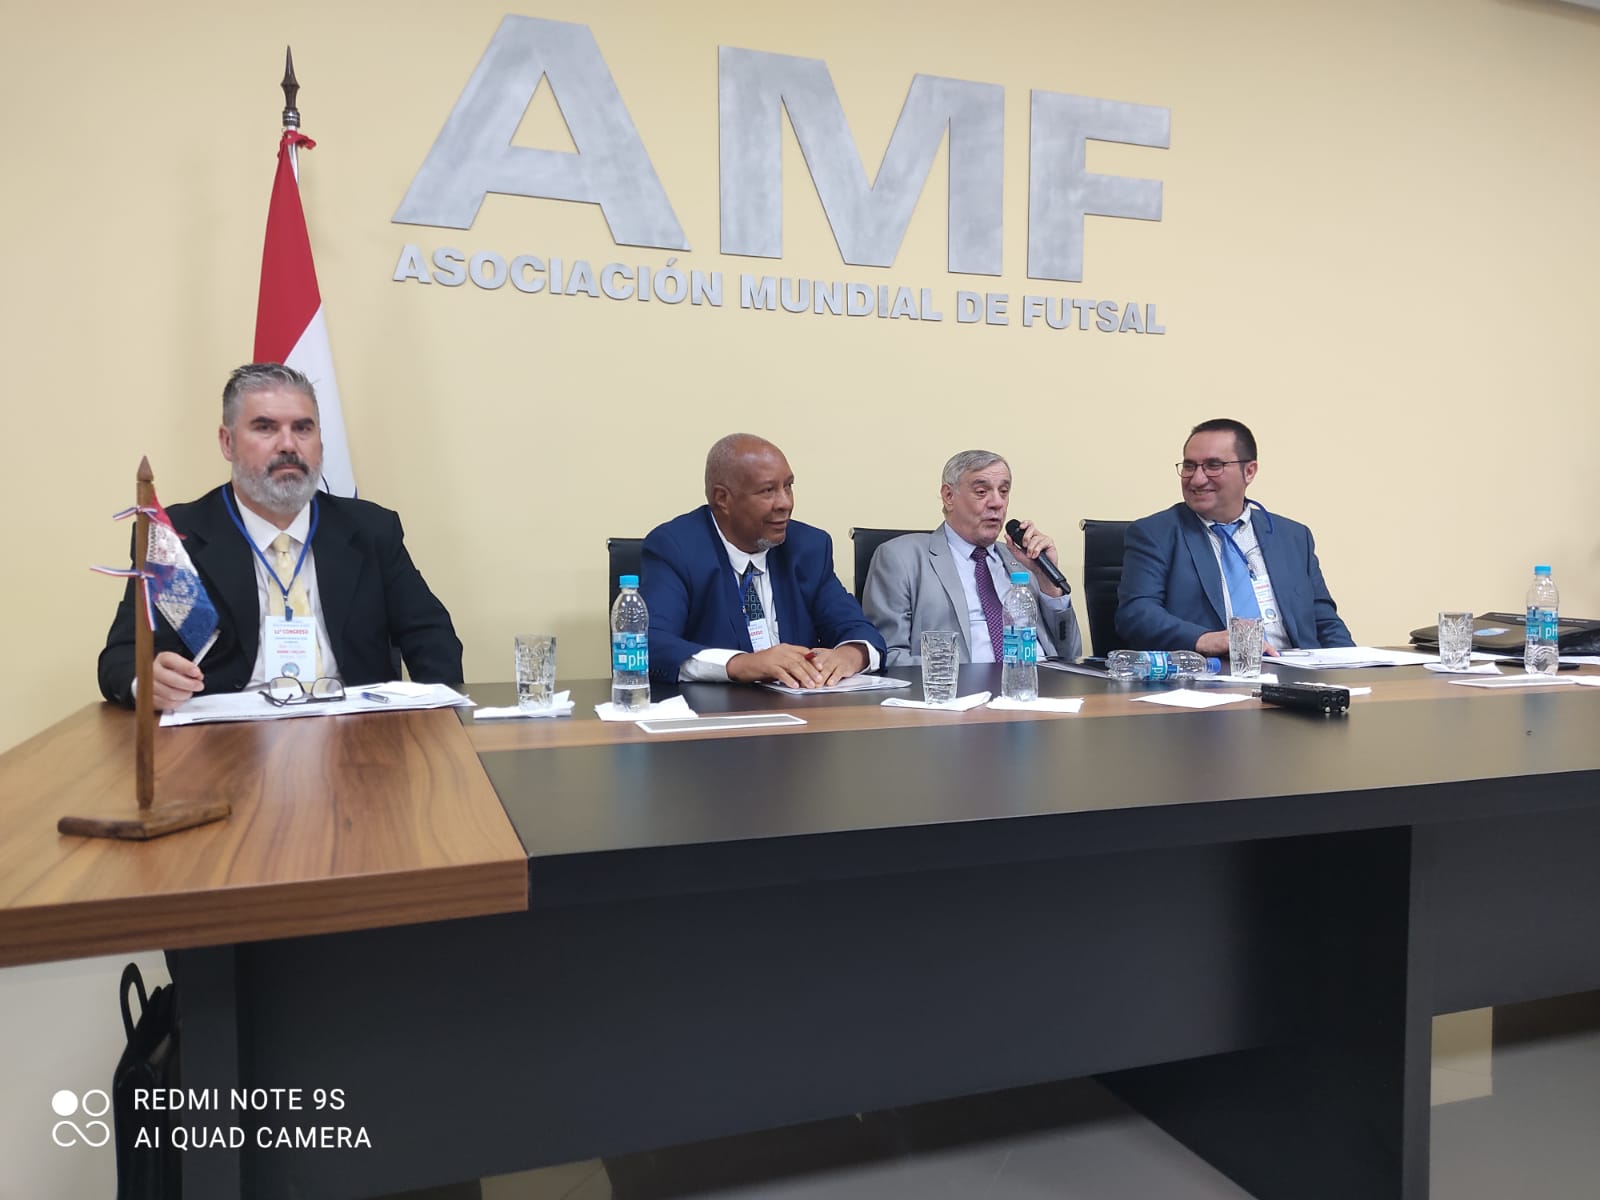 Antenor Telles assume vice-presidência da Associação Mundial de Futsal, e se encarrega de representar Américas do Sul e do Norte